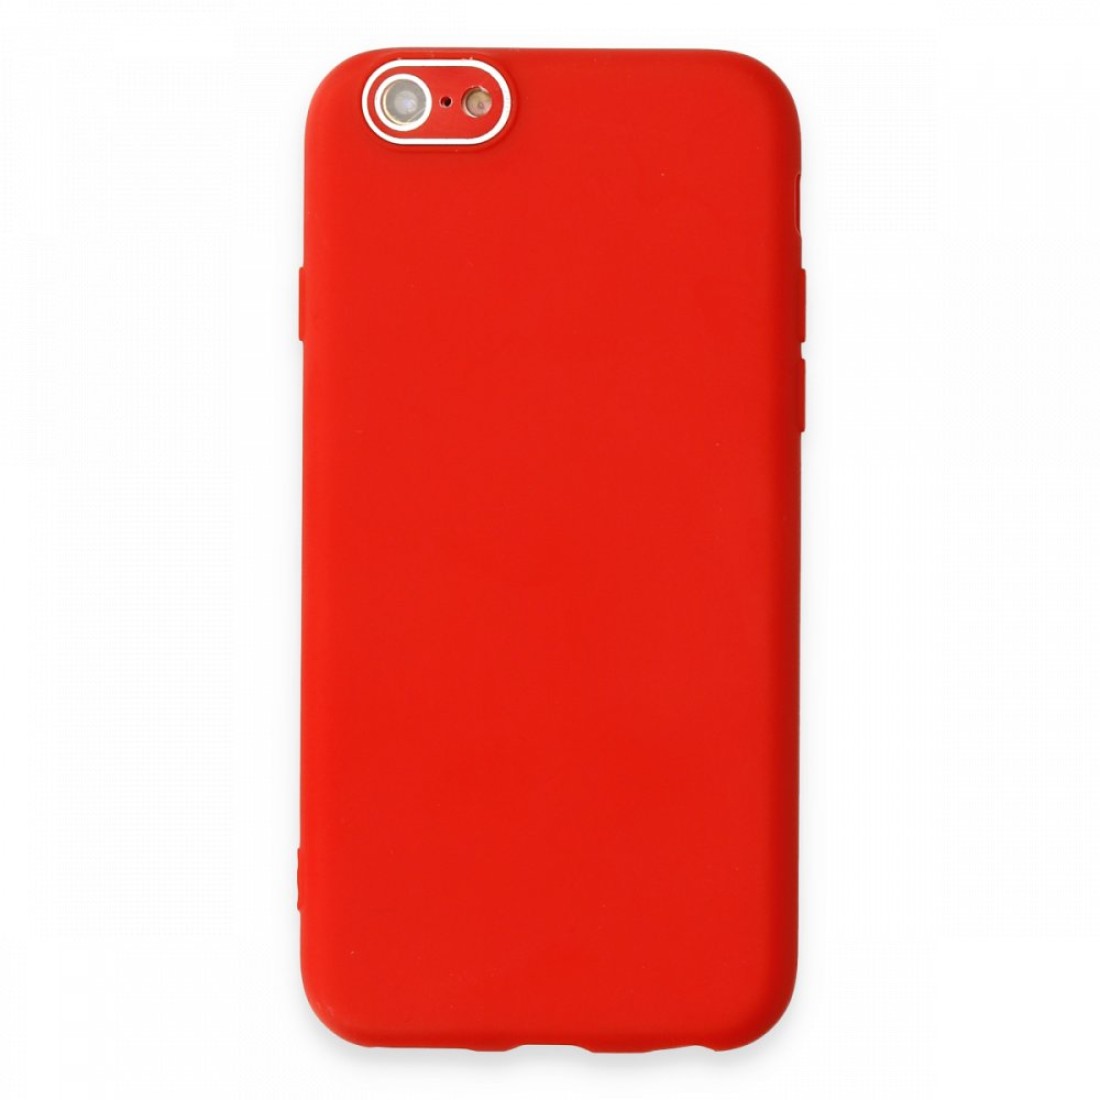 Apple iPhone 6 Kılıf Lansman Glass Kapak - Kırmızı